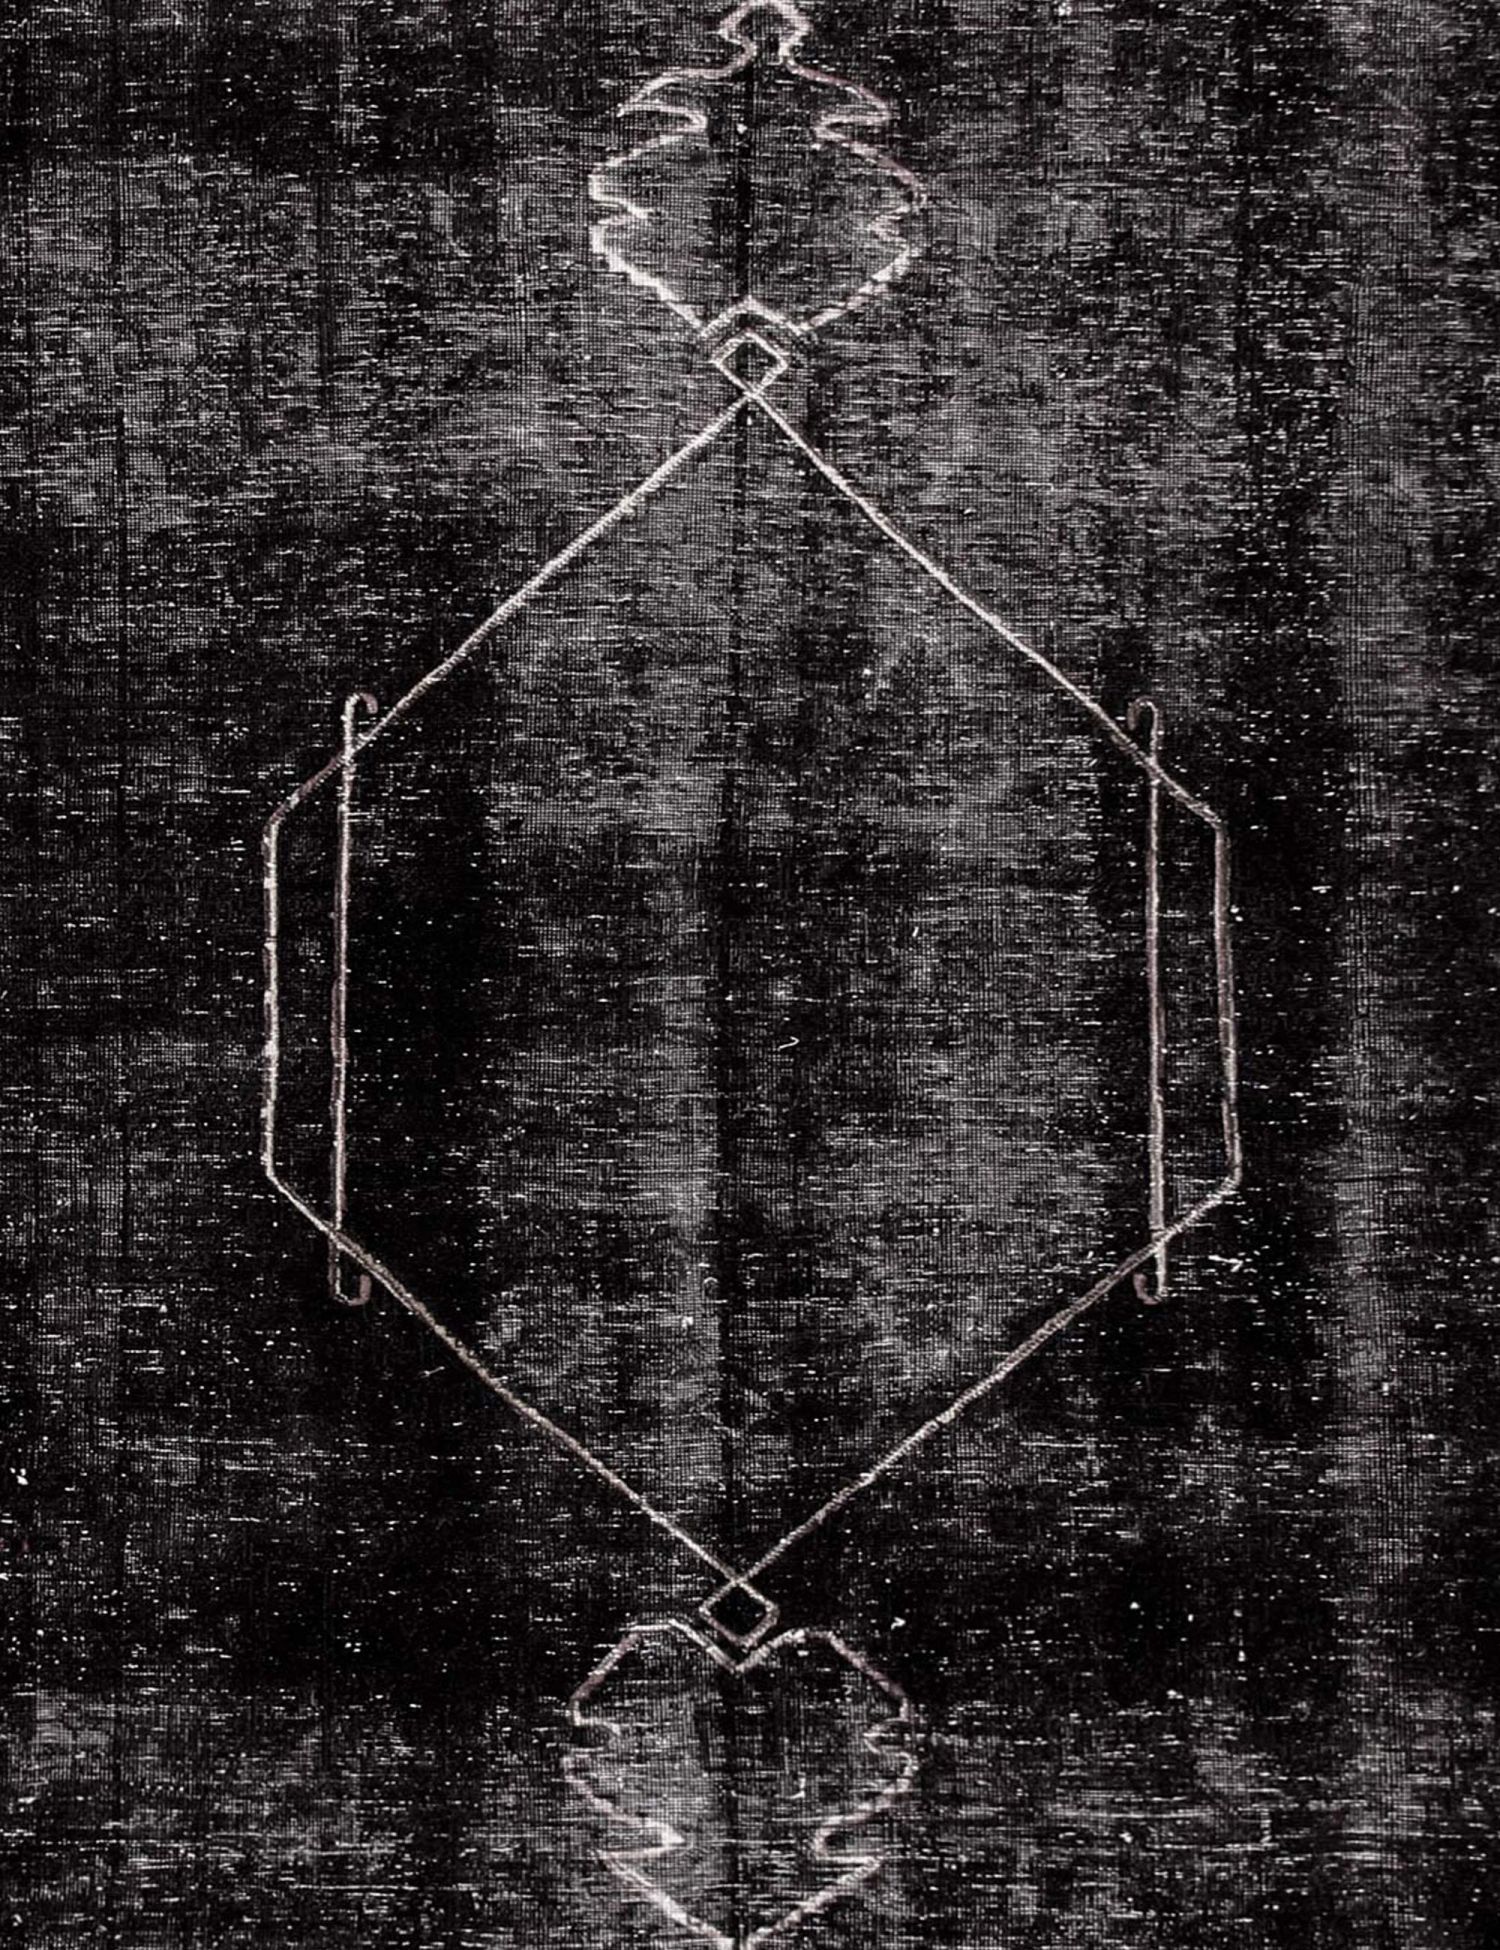 Persischer Vintage Teppich  schwarz <br/>190 x 190 cm